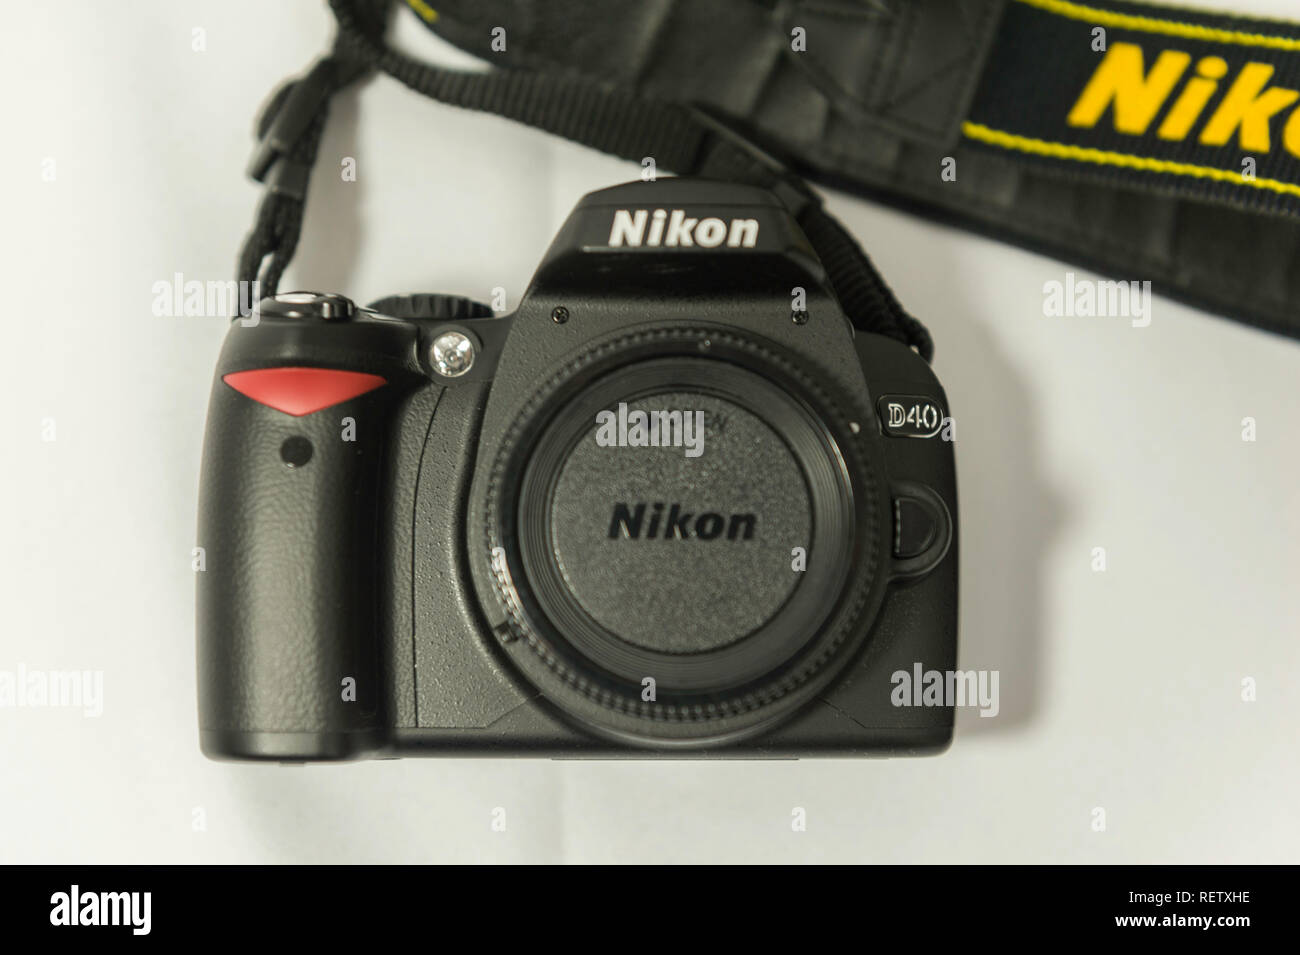 Nikon D40 DSLR Stock Photo